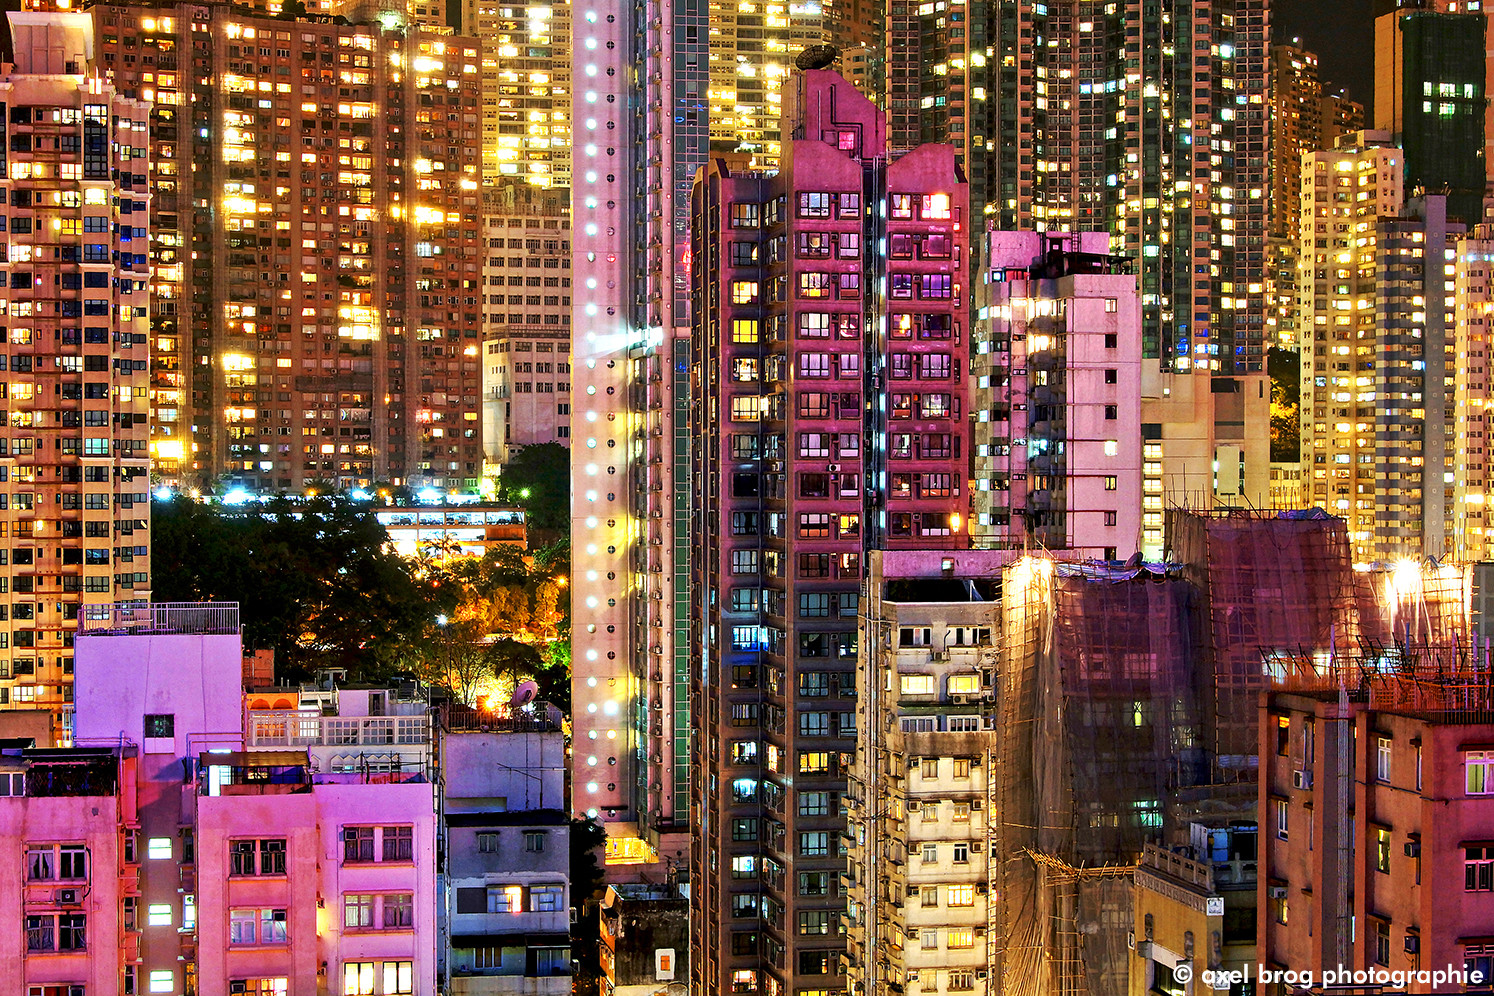 Hongkong02 by Axel Brog